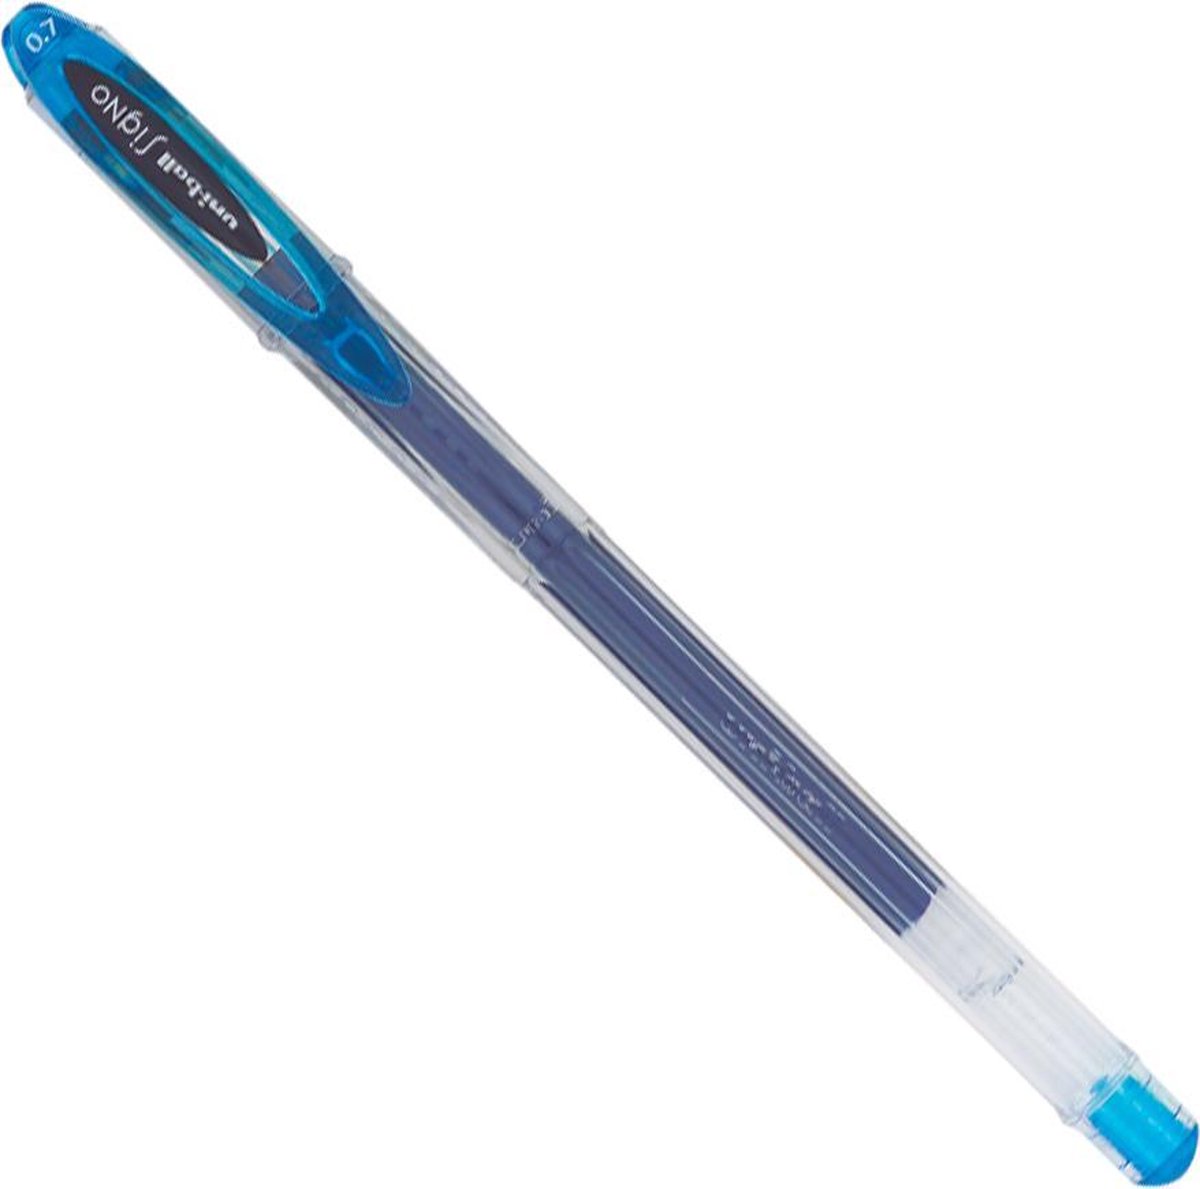 Uni-Ball Lichtblauwe Gelpen - Signo UM-120 Gel Pen - Gel pen met snel drogende, licht- en water resistente inkt - 0.7mm schrijfbreedte